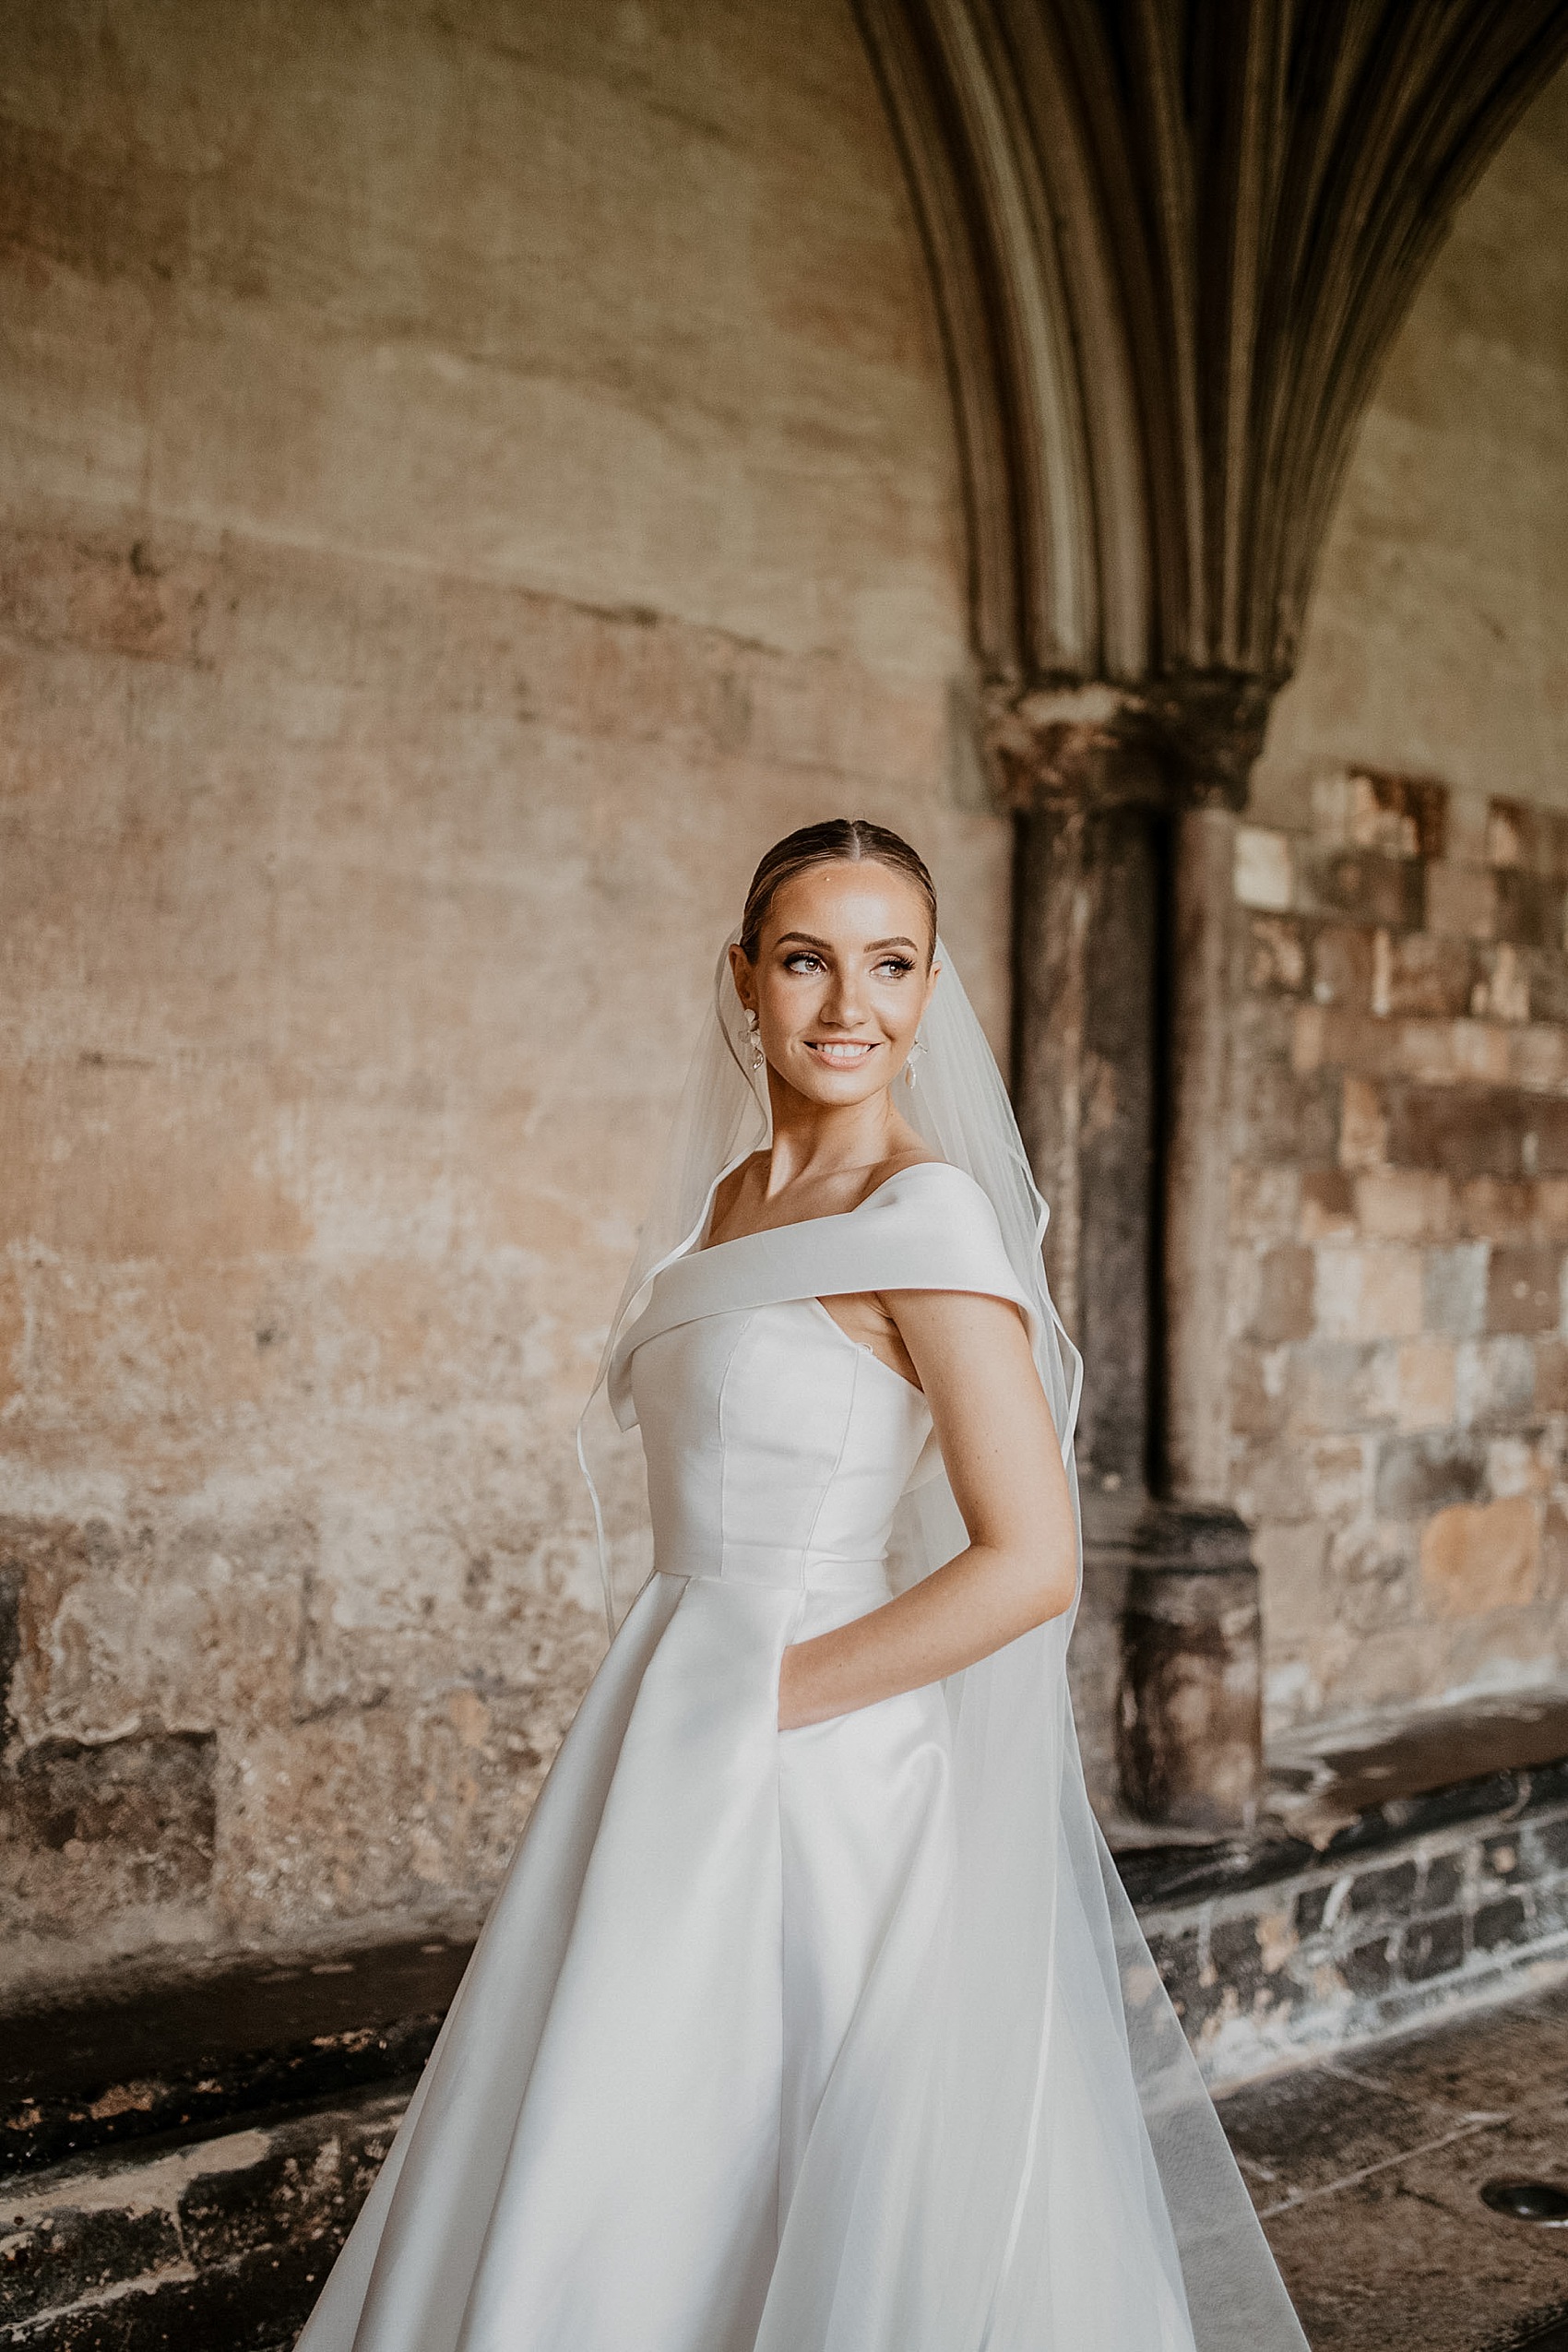 53 Jessica Bennett Bespoke bride Norwich Cathedral wedding